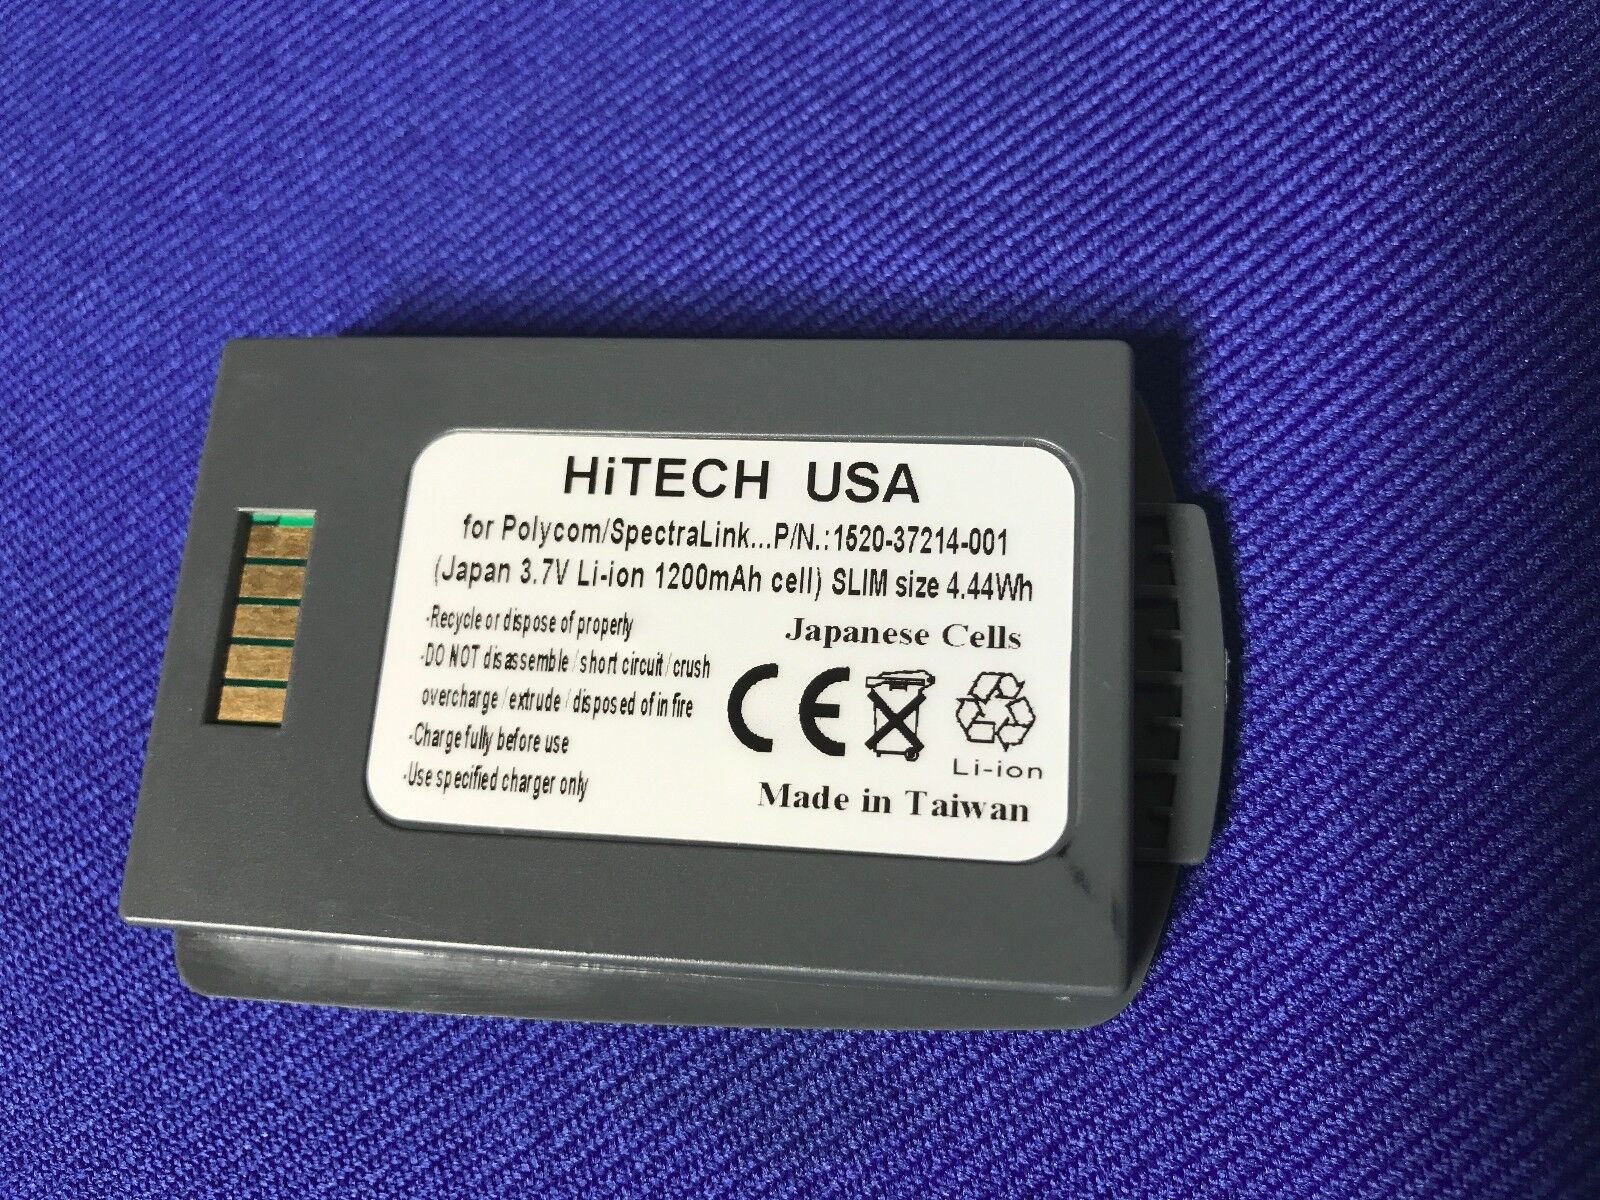 10 Batteries Hitech Polycom/SpectraLink 8400/8440#1520-37214-001*Japan Li1.2A4Wh